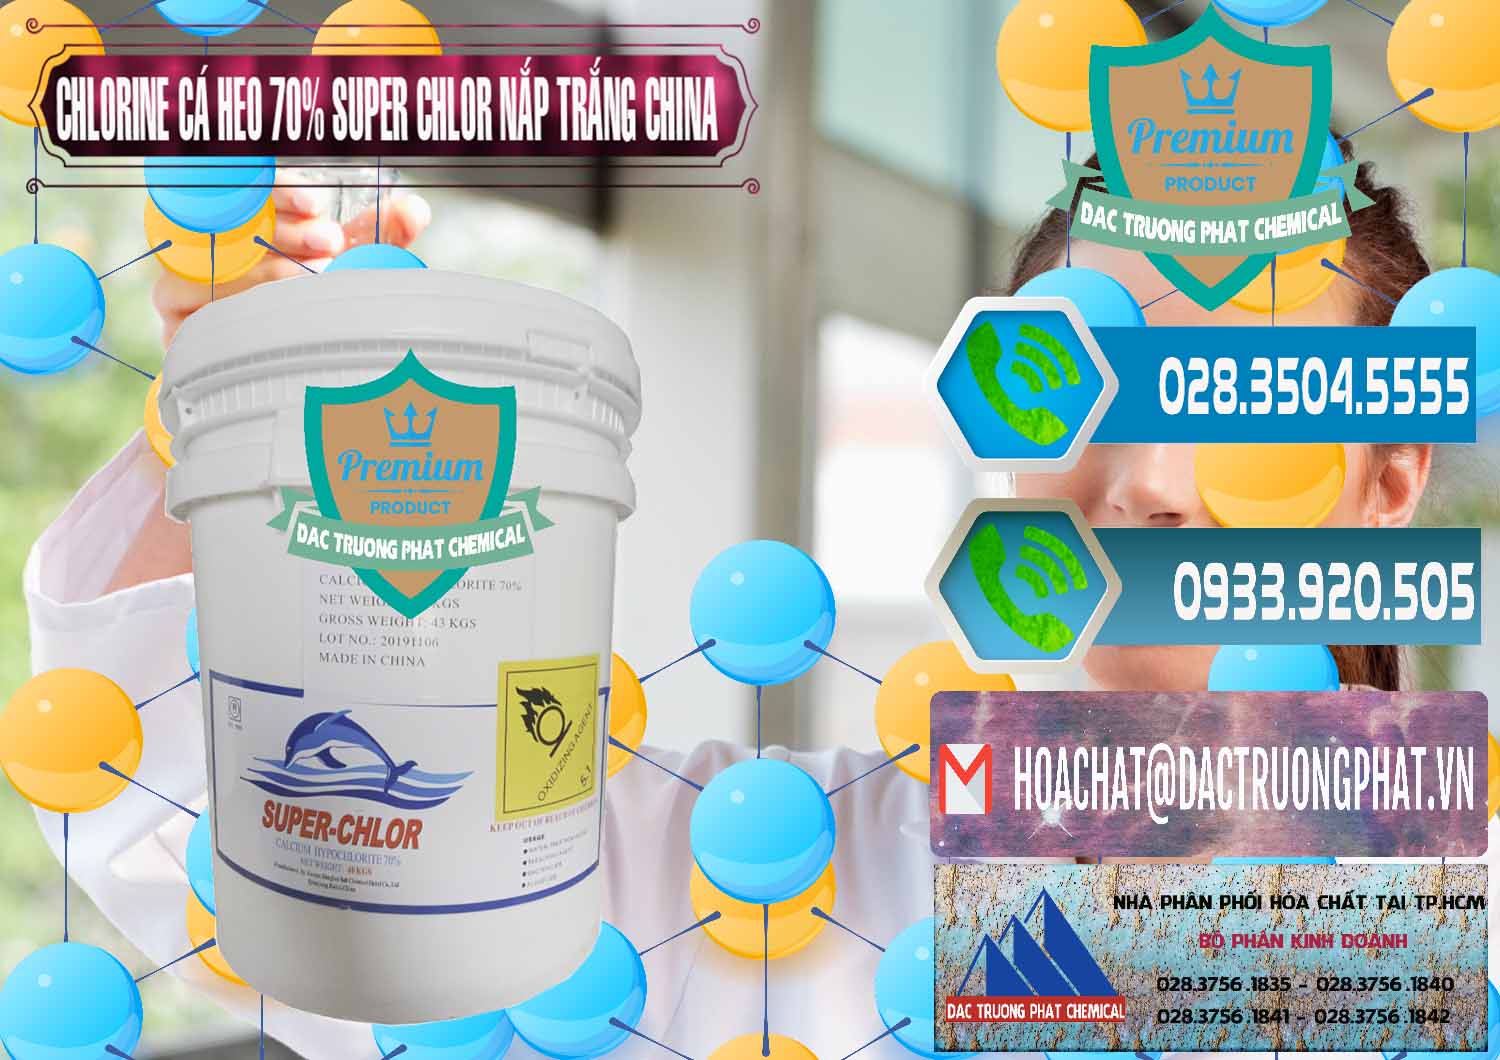 Chuyên cung cấp _ bán Clorin - Chlorine Cá Heo 70% Super Chlor Nắp Trắng Trung Quốc China - 0240 - Đơn vị chuyên cung ứng _ phân phối hóa chất tại TP.HCM - congtyhoachat.net